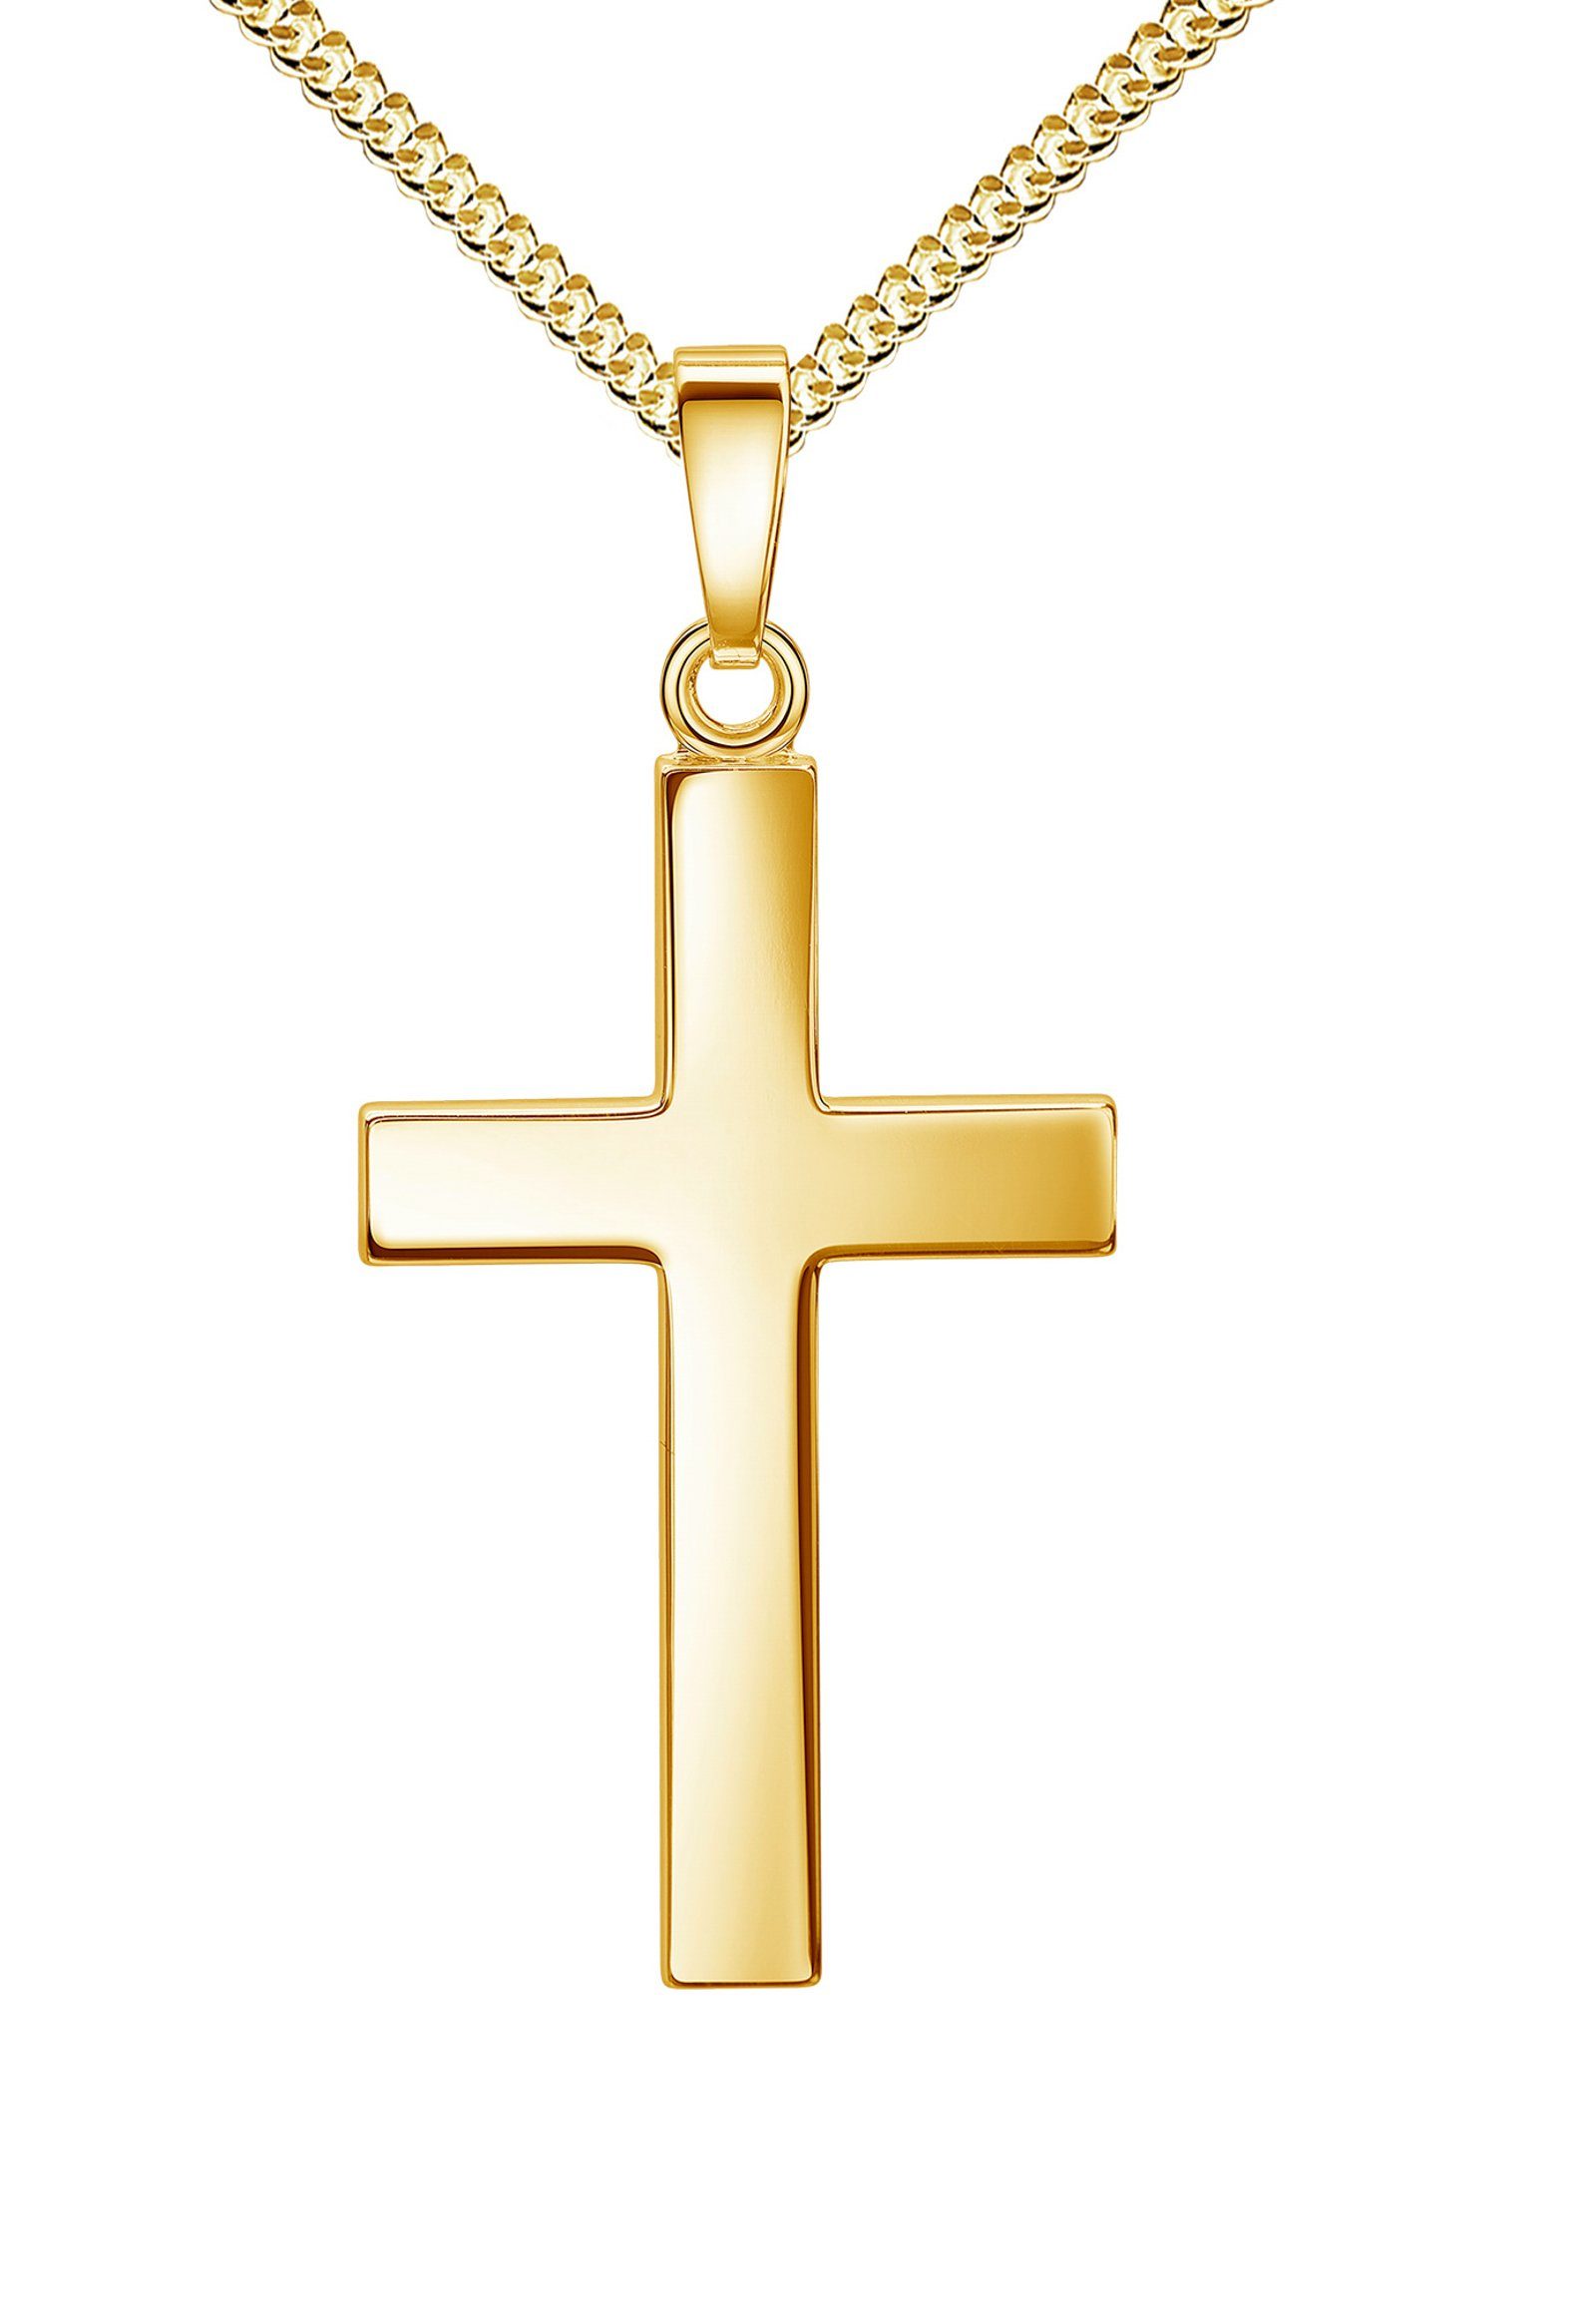 JEVELION Kette mit Anhänger Kreuz-Anhänger aus 585 Gelbgold (Goldkreuz, für  Damen), Mit Kette - Länge wählbar 36 - 70 cm. Made in Germany